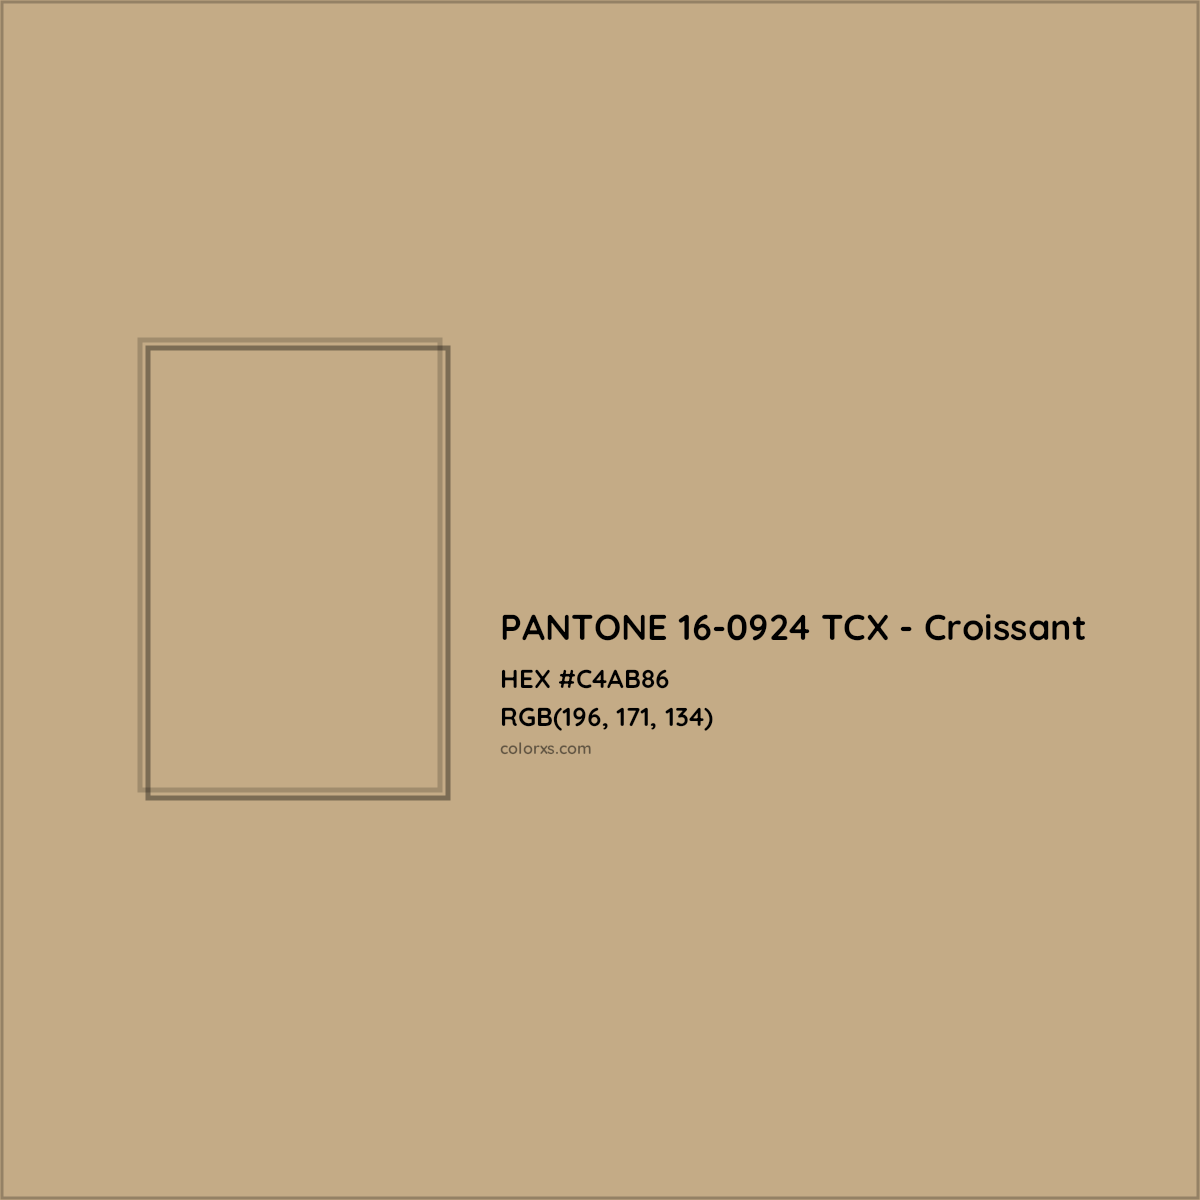 HEX #C4AB86 PANTONE 16-0924 TCX - Croissant CMS Pantone TCX - Color Code